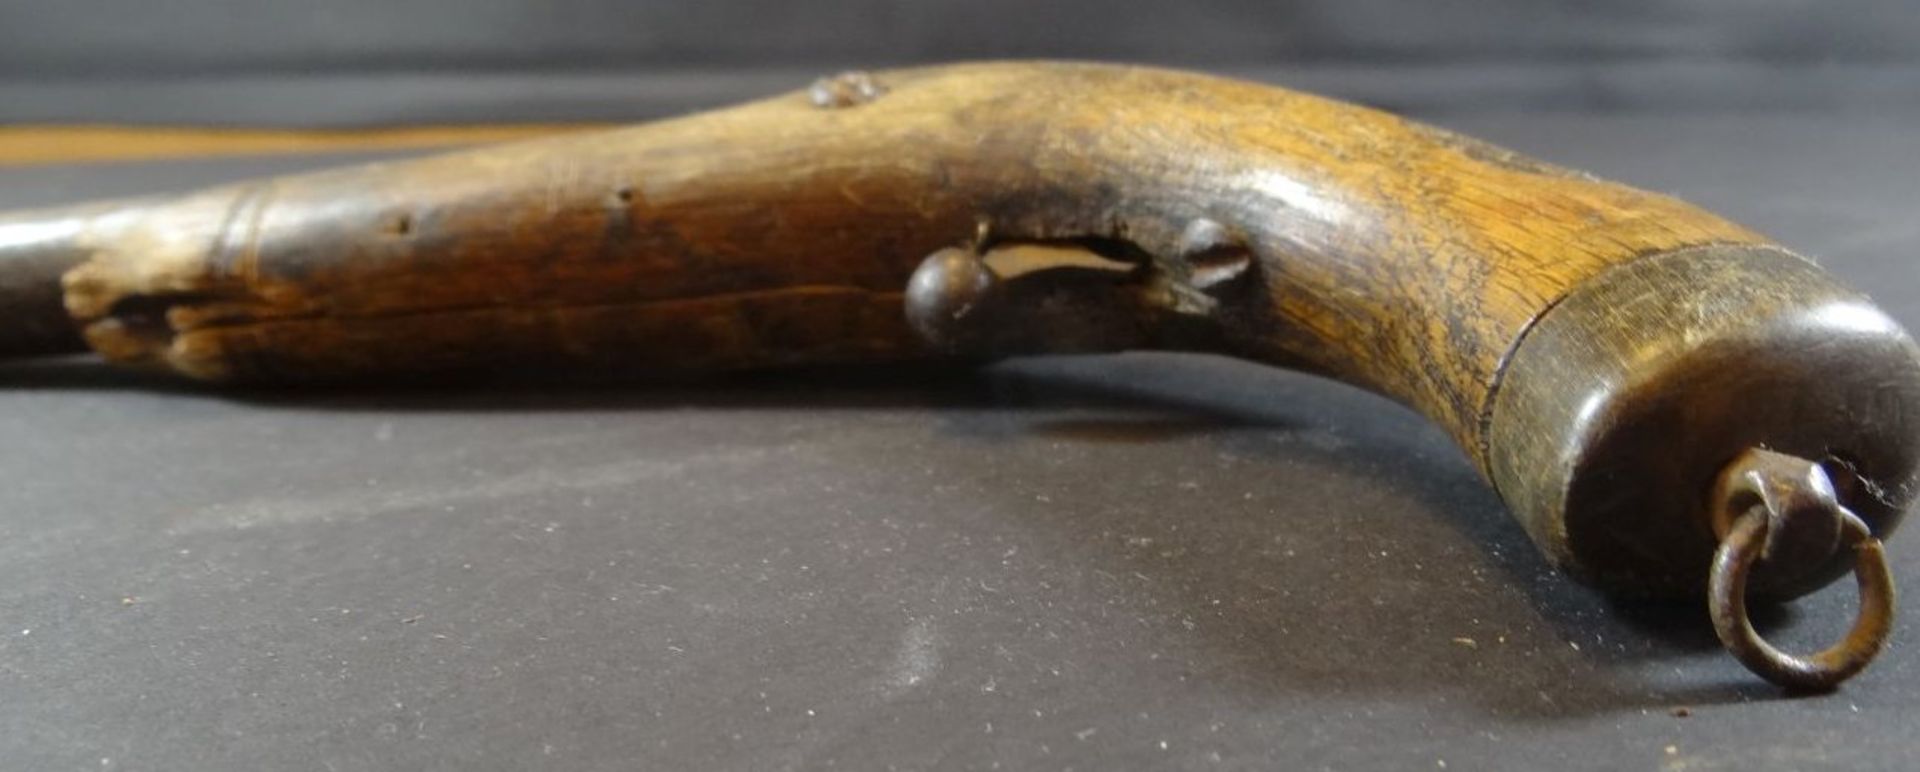 kl. Steinschloss Pistole,  Holz beschädigt, Altersspuren, L-26 cm - Bild 4 aus 5